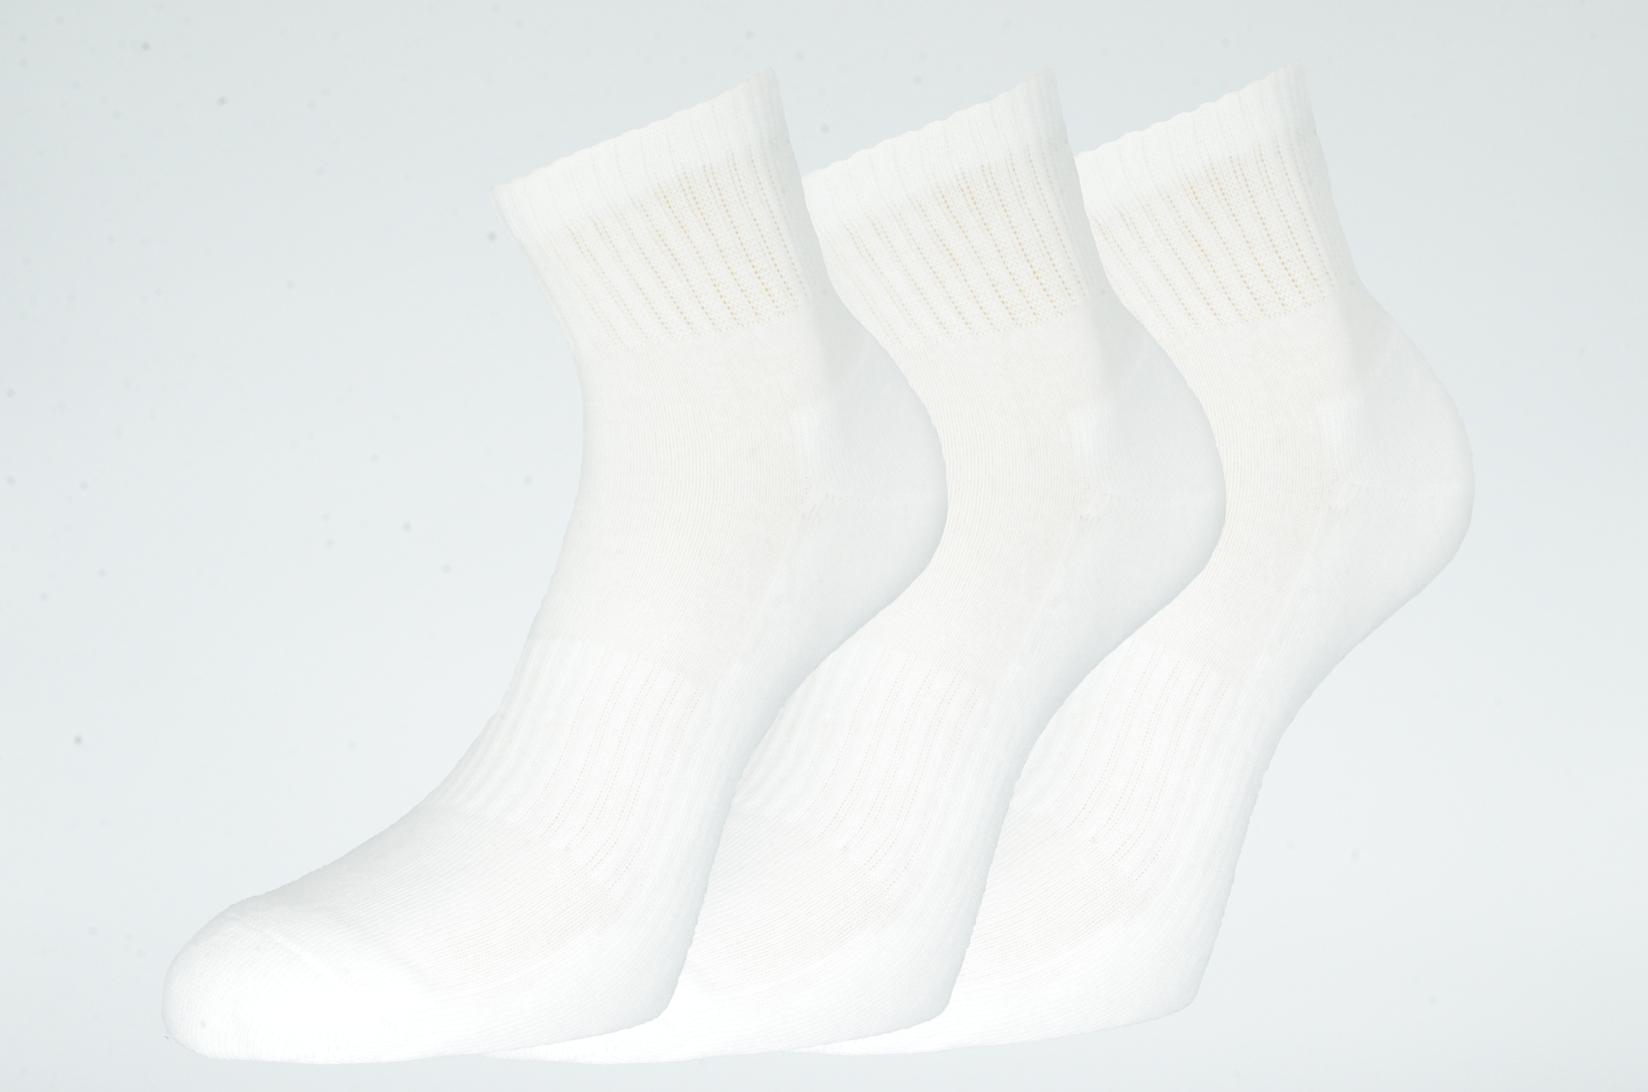 GERBI Sportske čarape Athletic 3/1 art.251 42-44 M1 bele